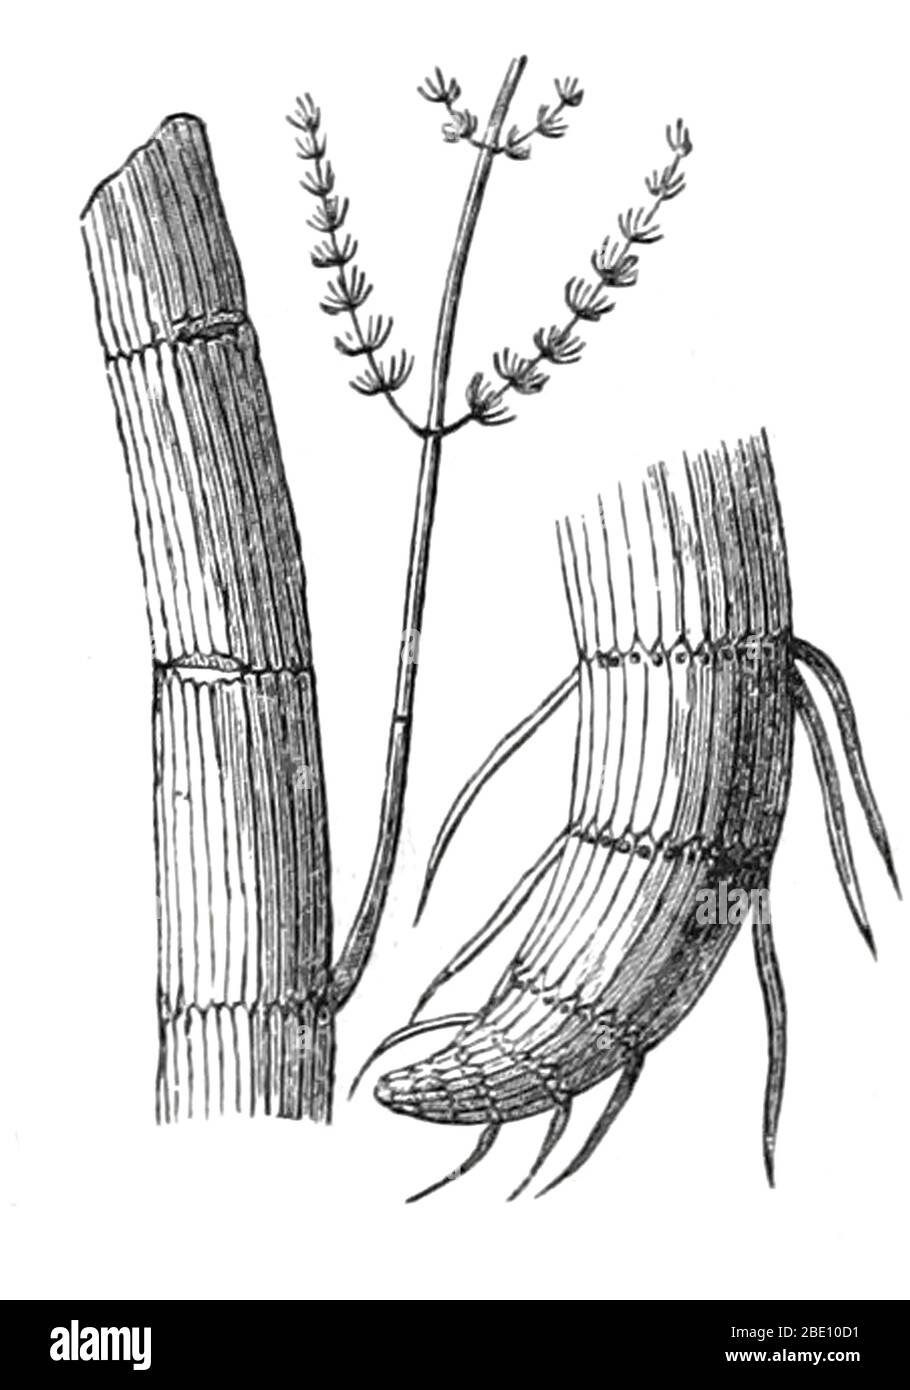 Calamiti paleozoici, compresa una radice (a destra). Illustrazione da 1872. Una calamite è un membro della linea di corsetti giganti, che apparteneva alla Sfenopsida, una parte importante della vegetazione tardo paleozoica. I Calamiti crebbero per essere piante a grandezza di albero con ma con rami bianchi visti nelle orchiaie moderne. Una radice di calamite può essere vista a destra. L'era paleozoica è la prima delle tre ere geologiche dell'Eon fanozoico, che si estende da circa 541 a 252.17 milioni di anni fa. Foto Stock